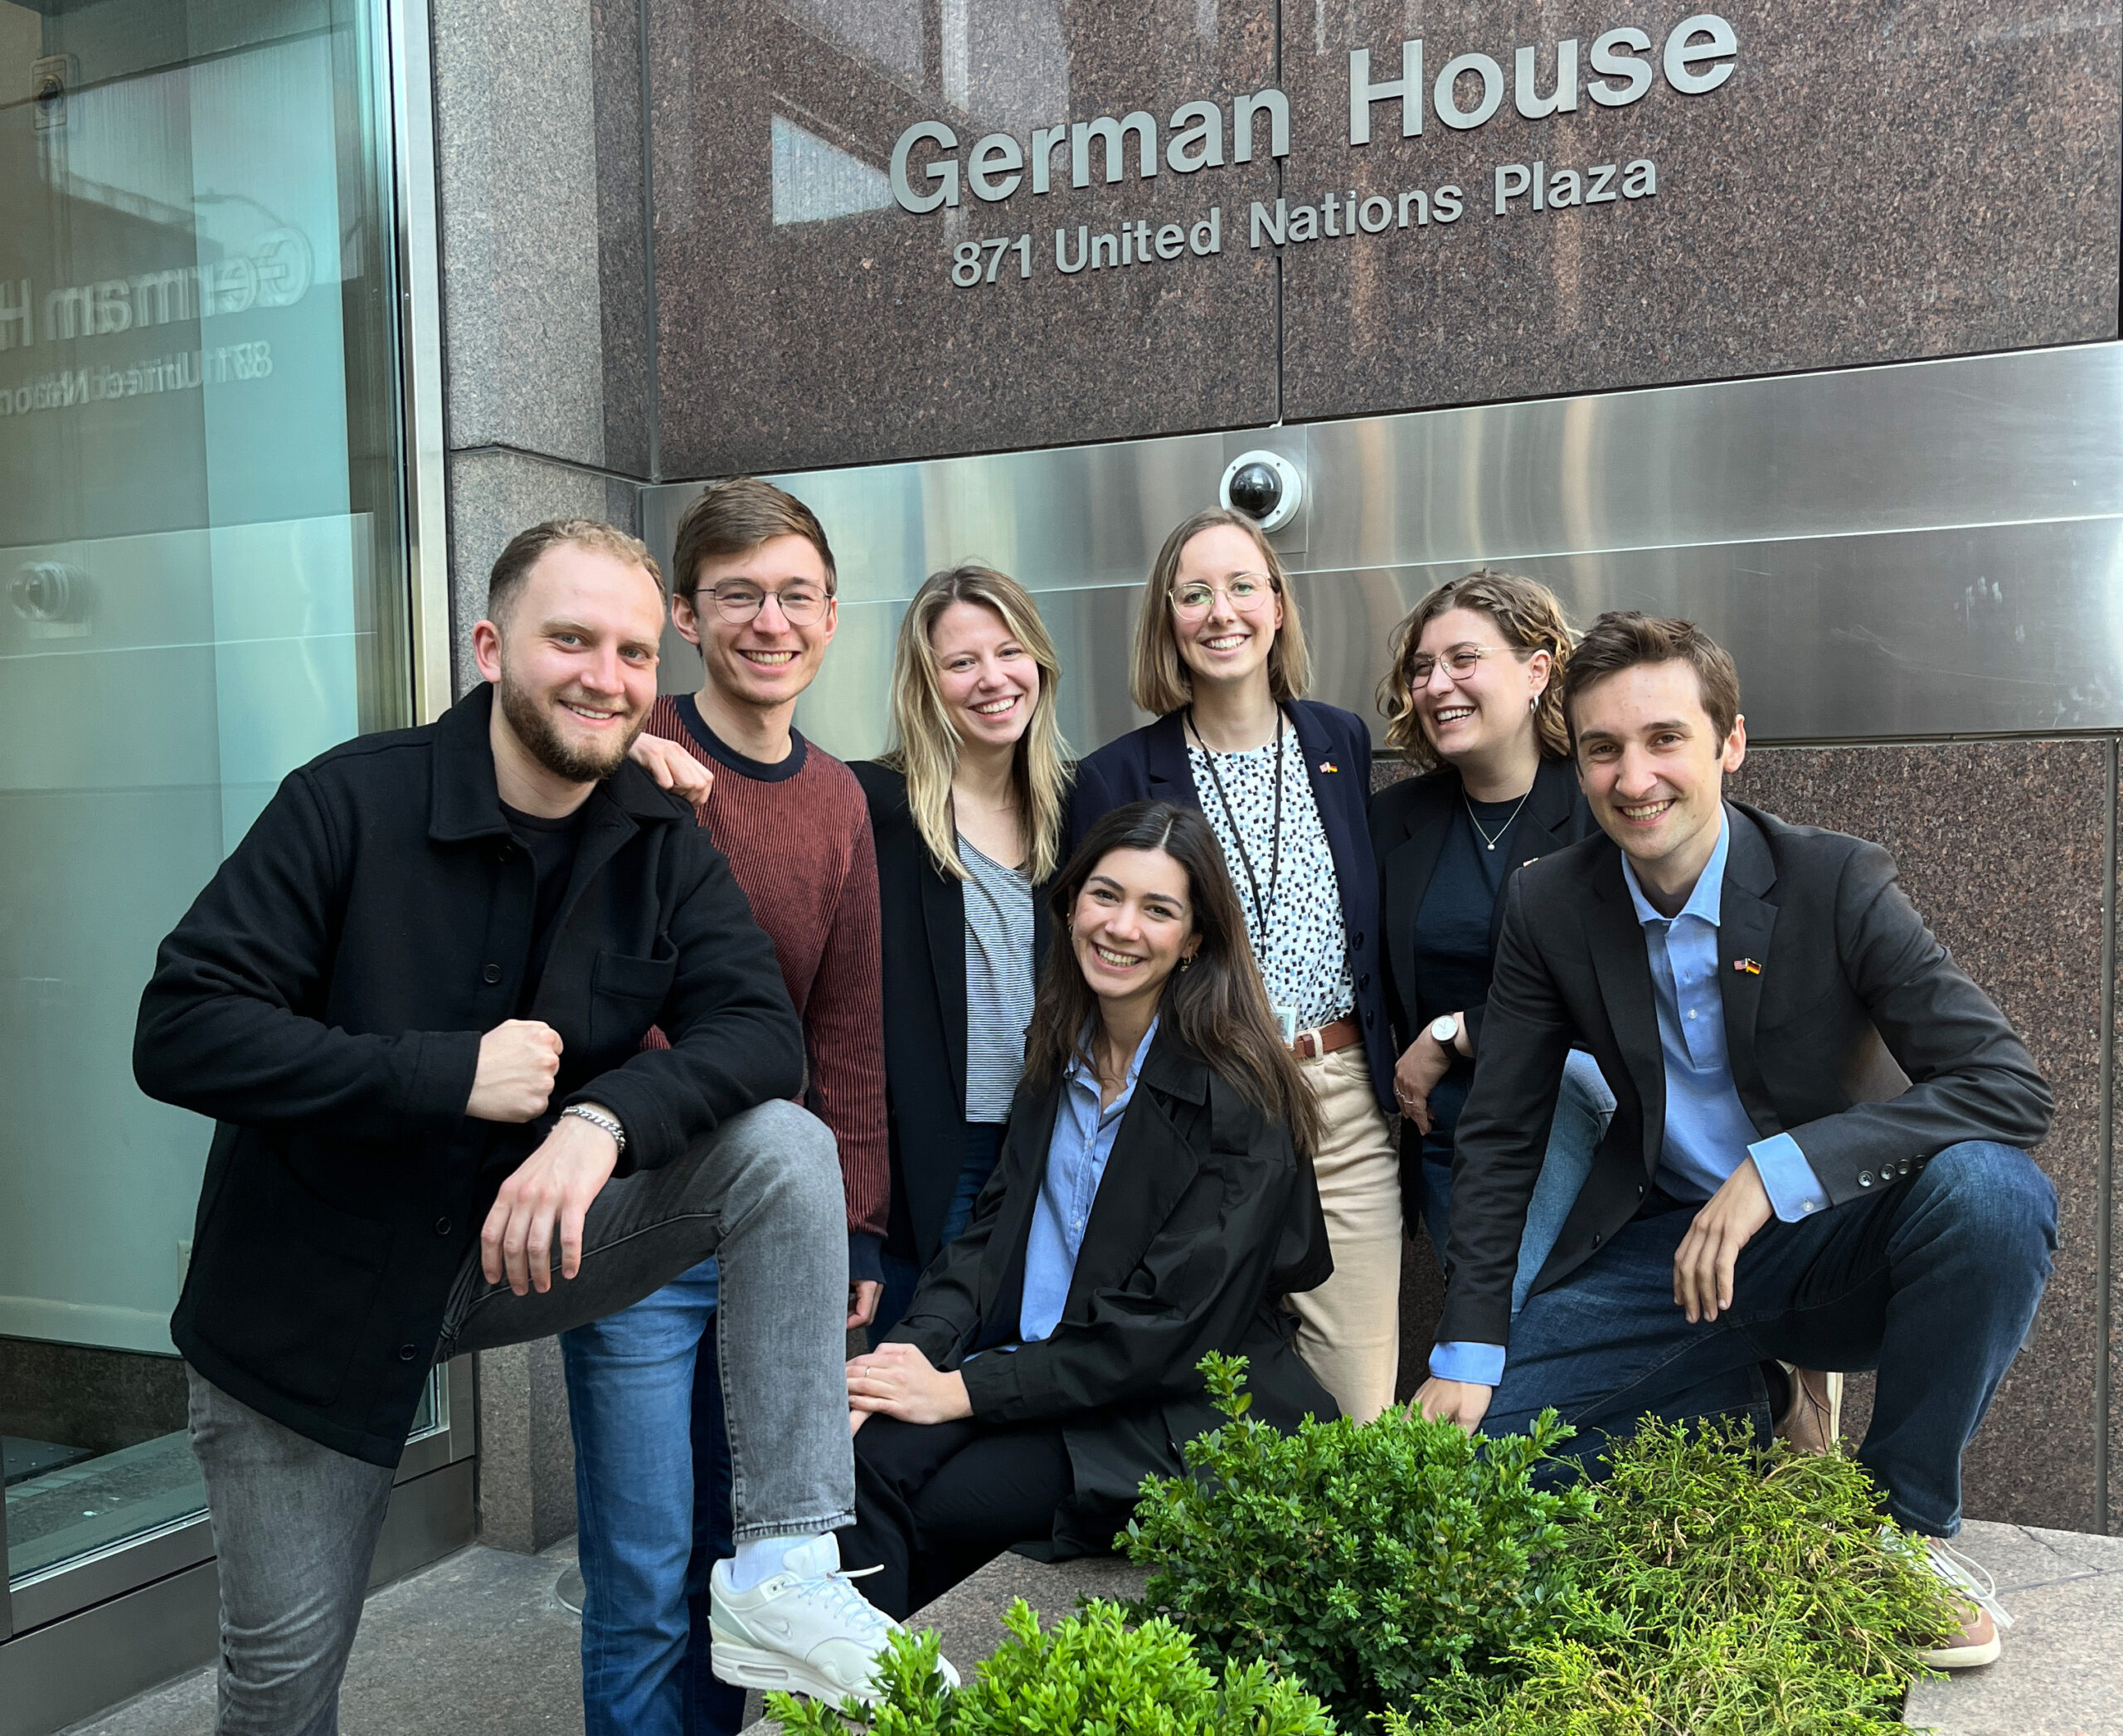 Gruppenbild von sieben Personen vor dem German House in New York